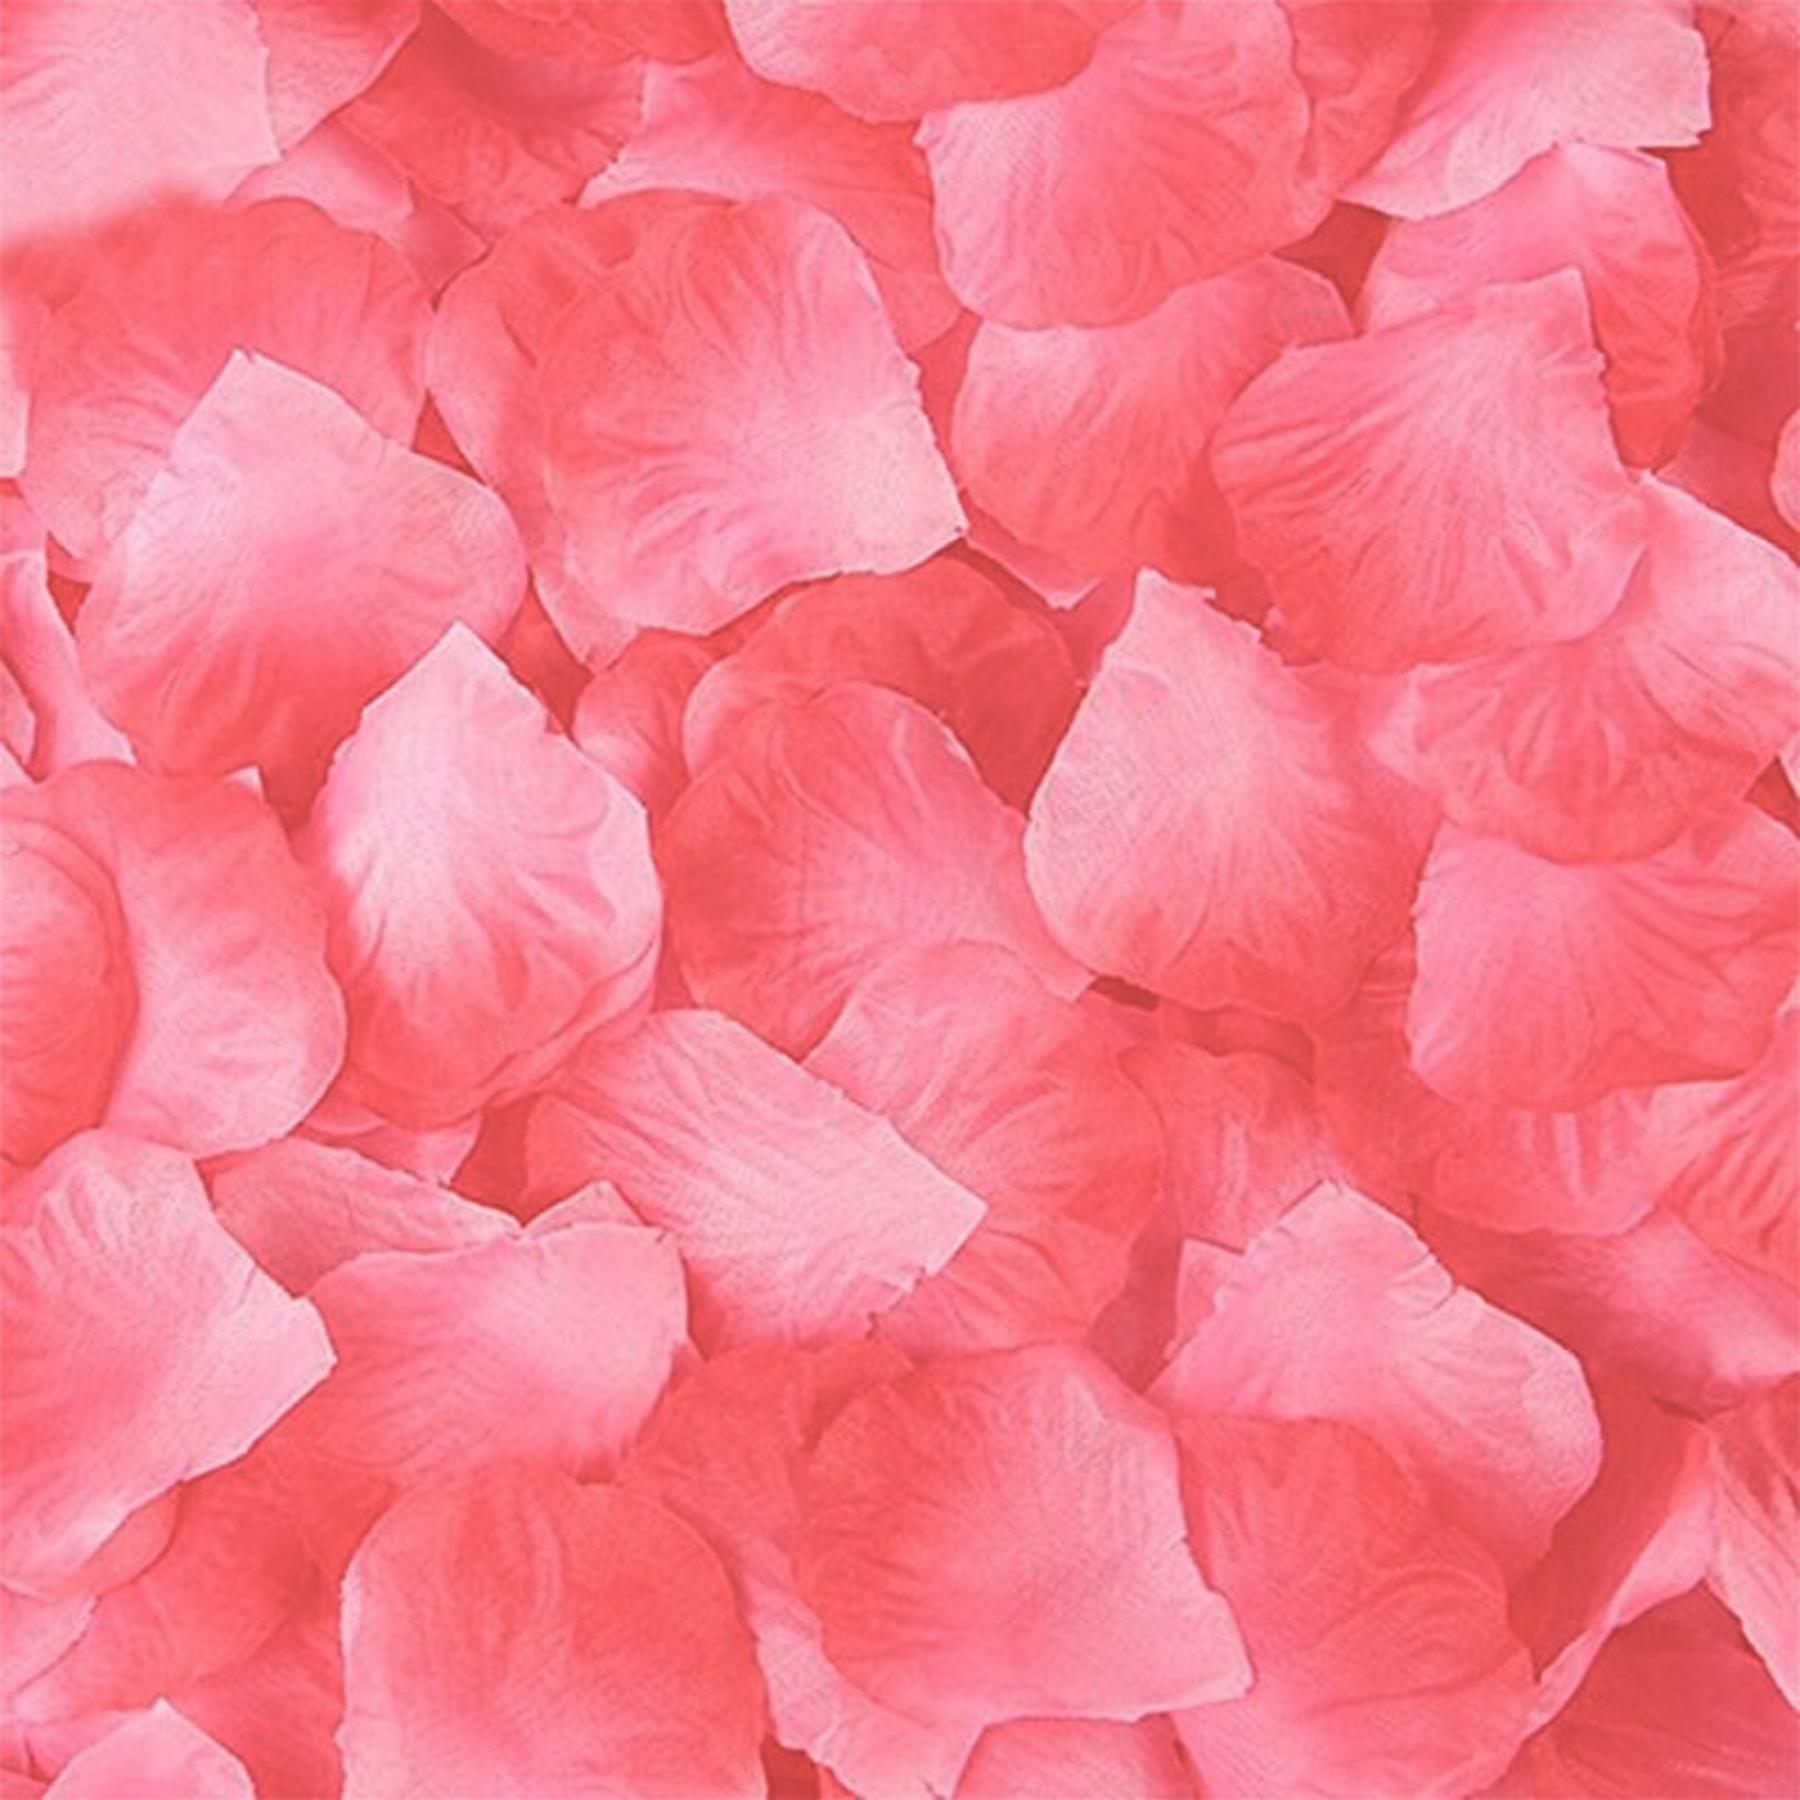 Rosenblätter 100er Packung - Rosa